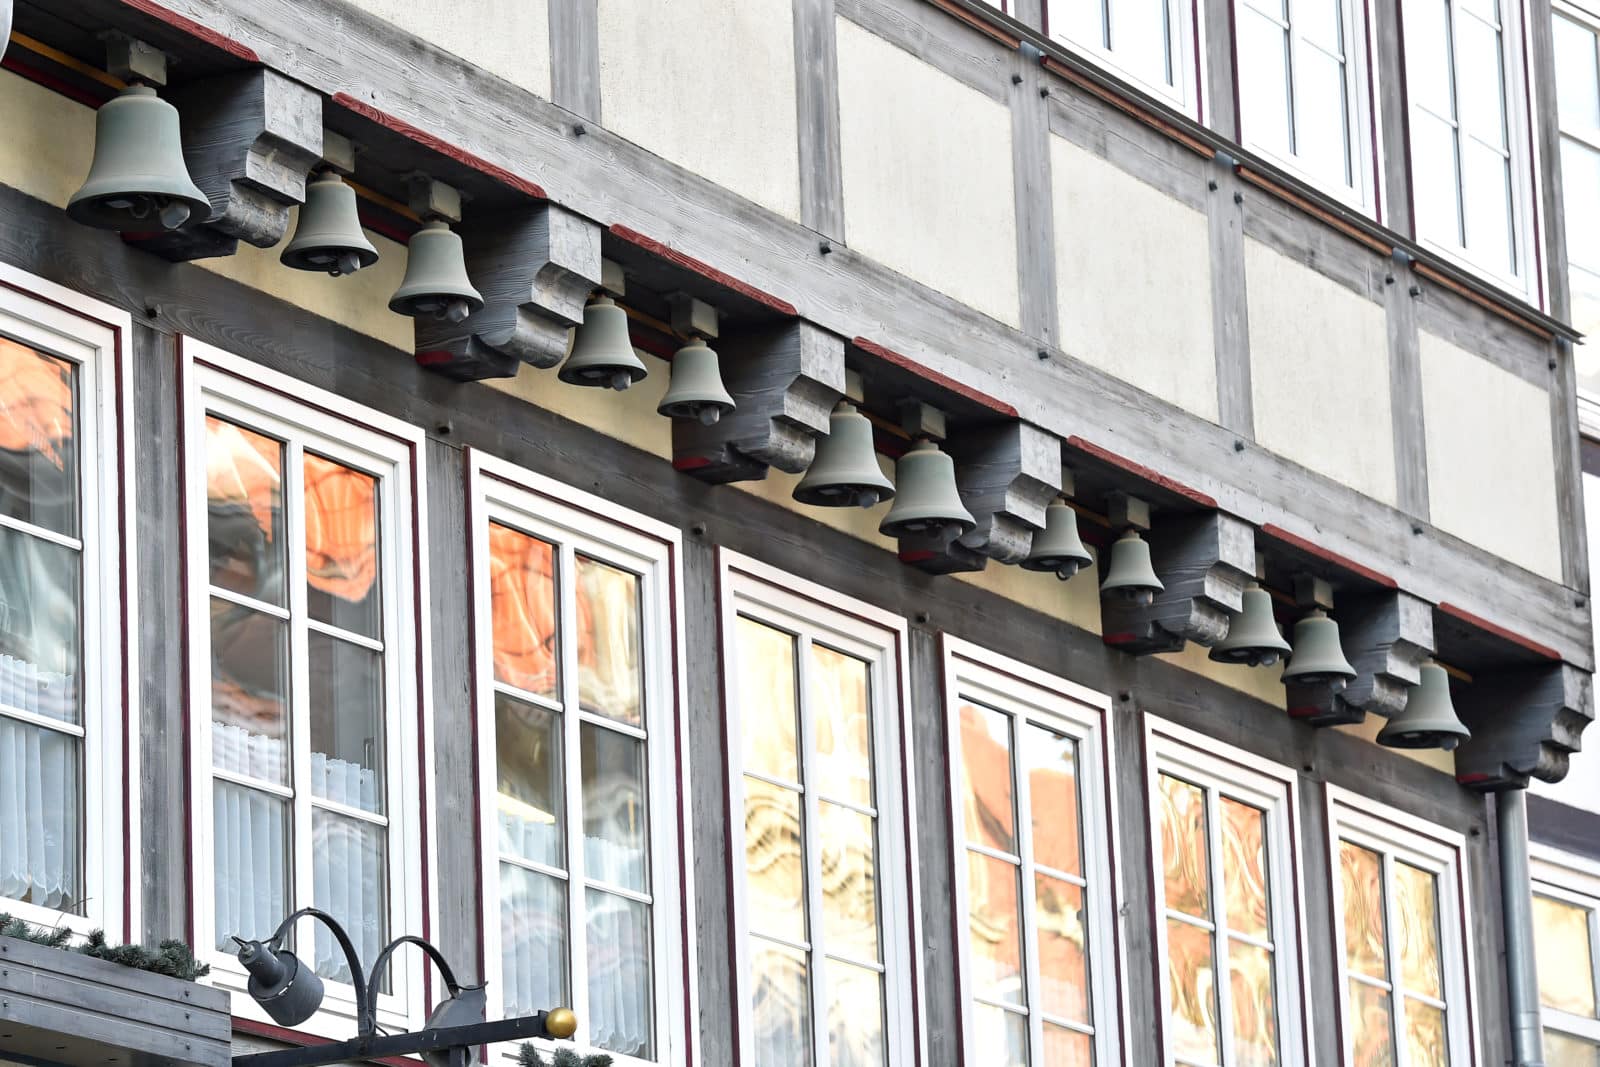 An der Fachwerk-Fassade des Hauses an der Langen Geismarstraße 44 hängen kleine Glocken